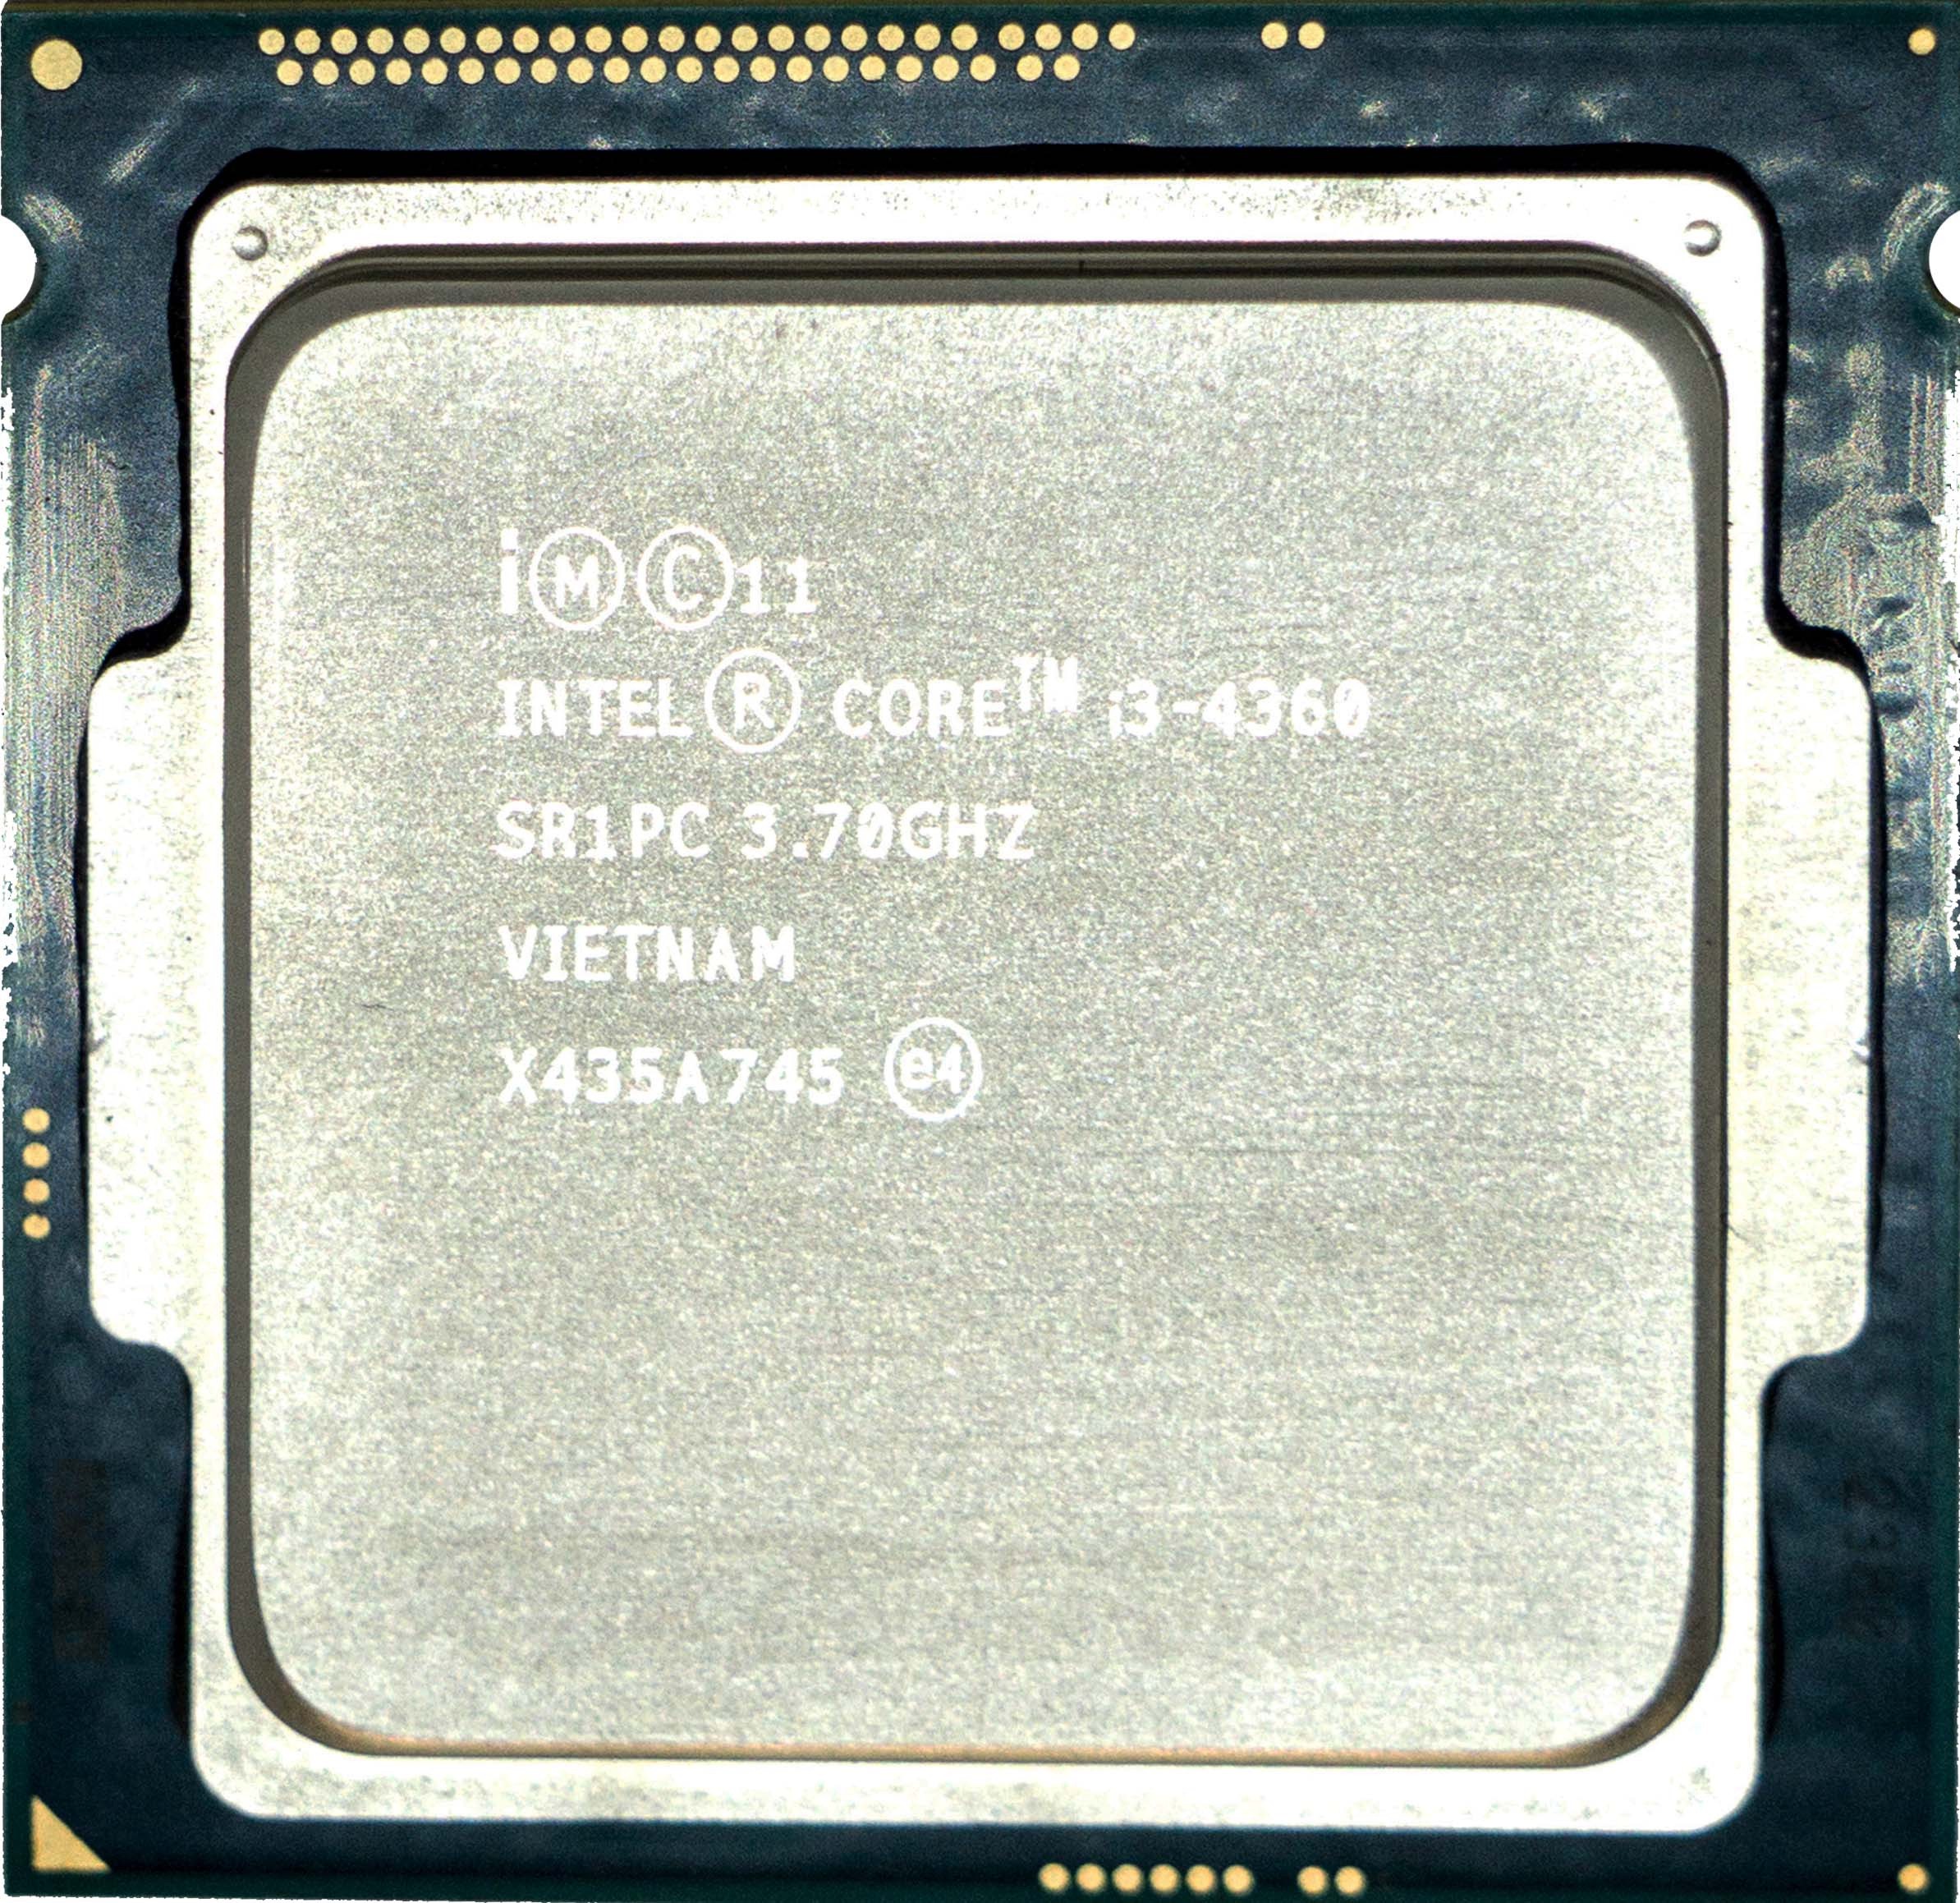 Intel Core I3 4360 Sr1pc 3 70ghz Dual 2 Core Lga1150 54w Processor